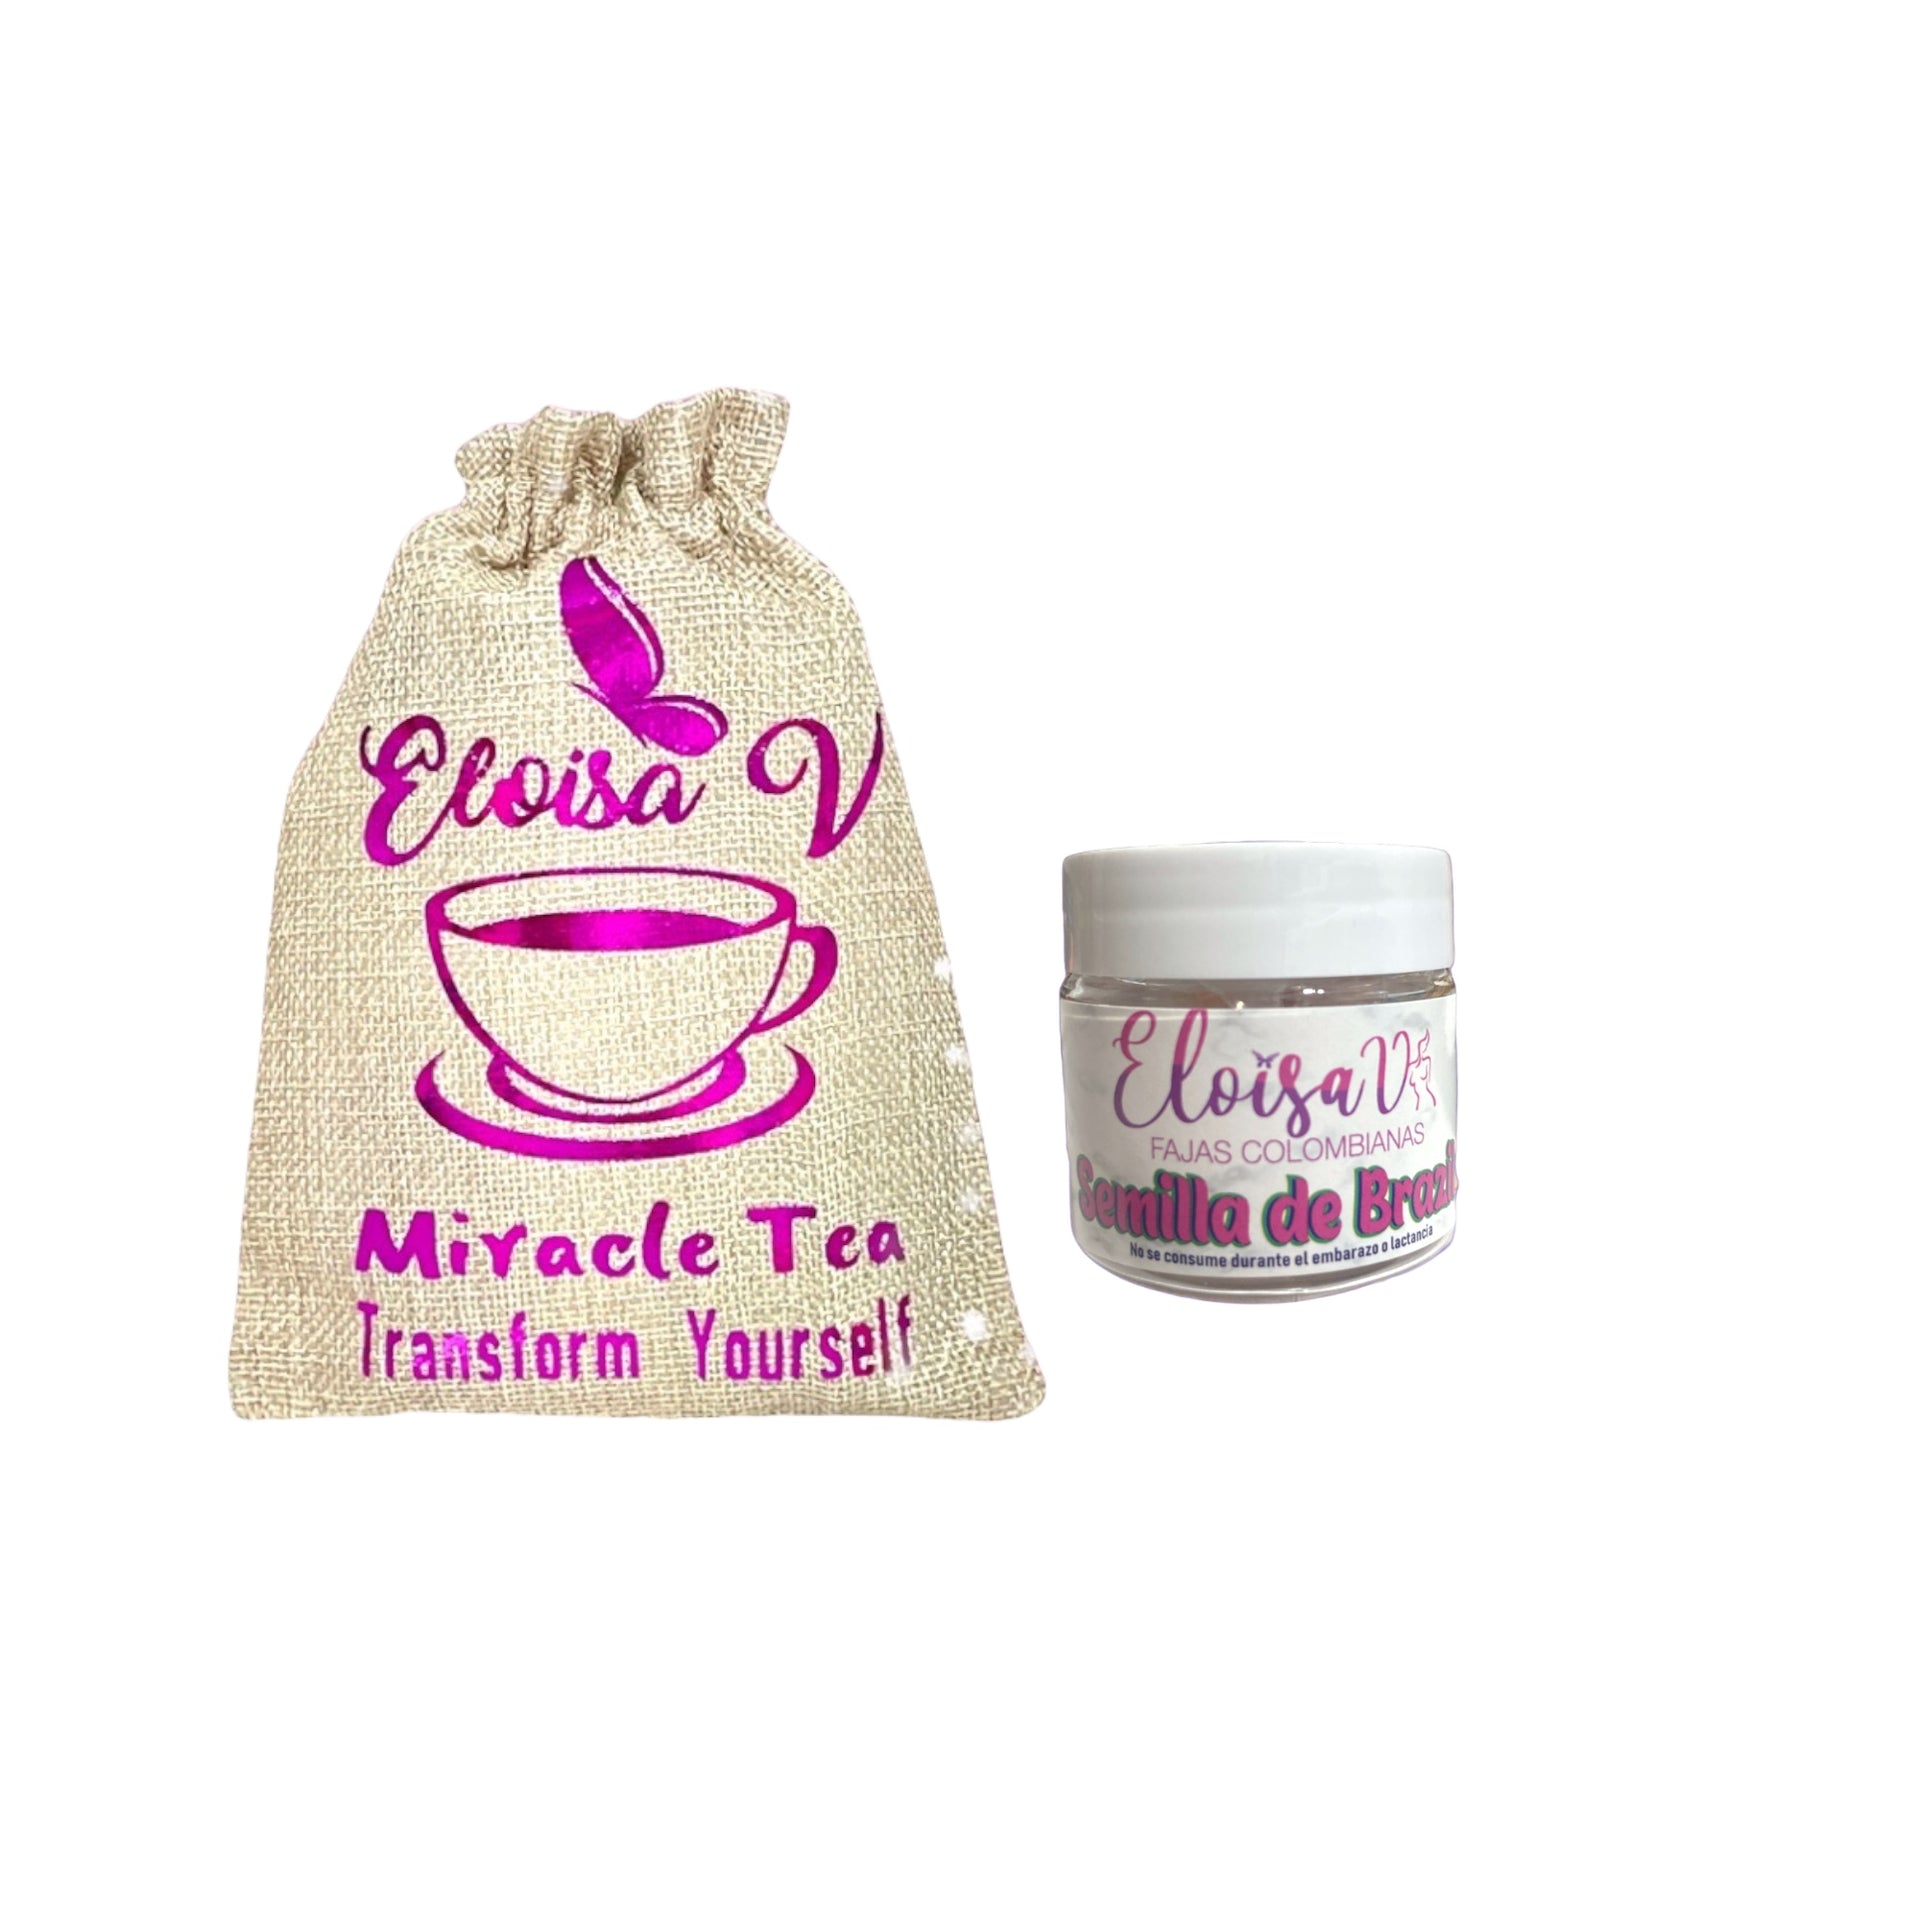 Miracle tea & semilla – eloisavfajascolombianas